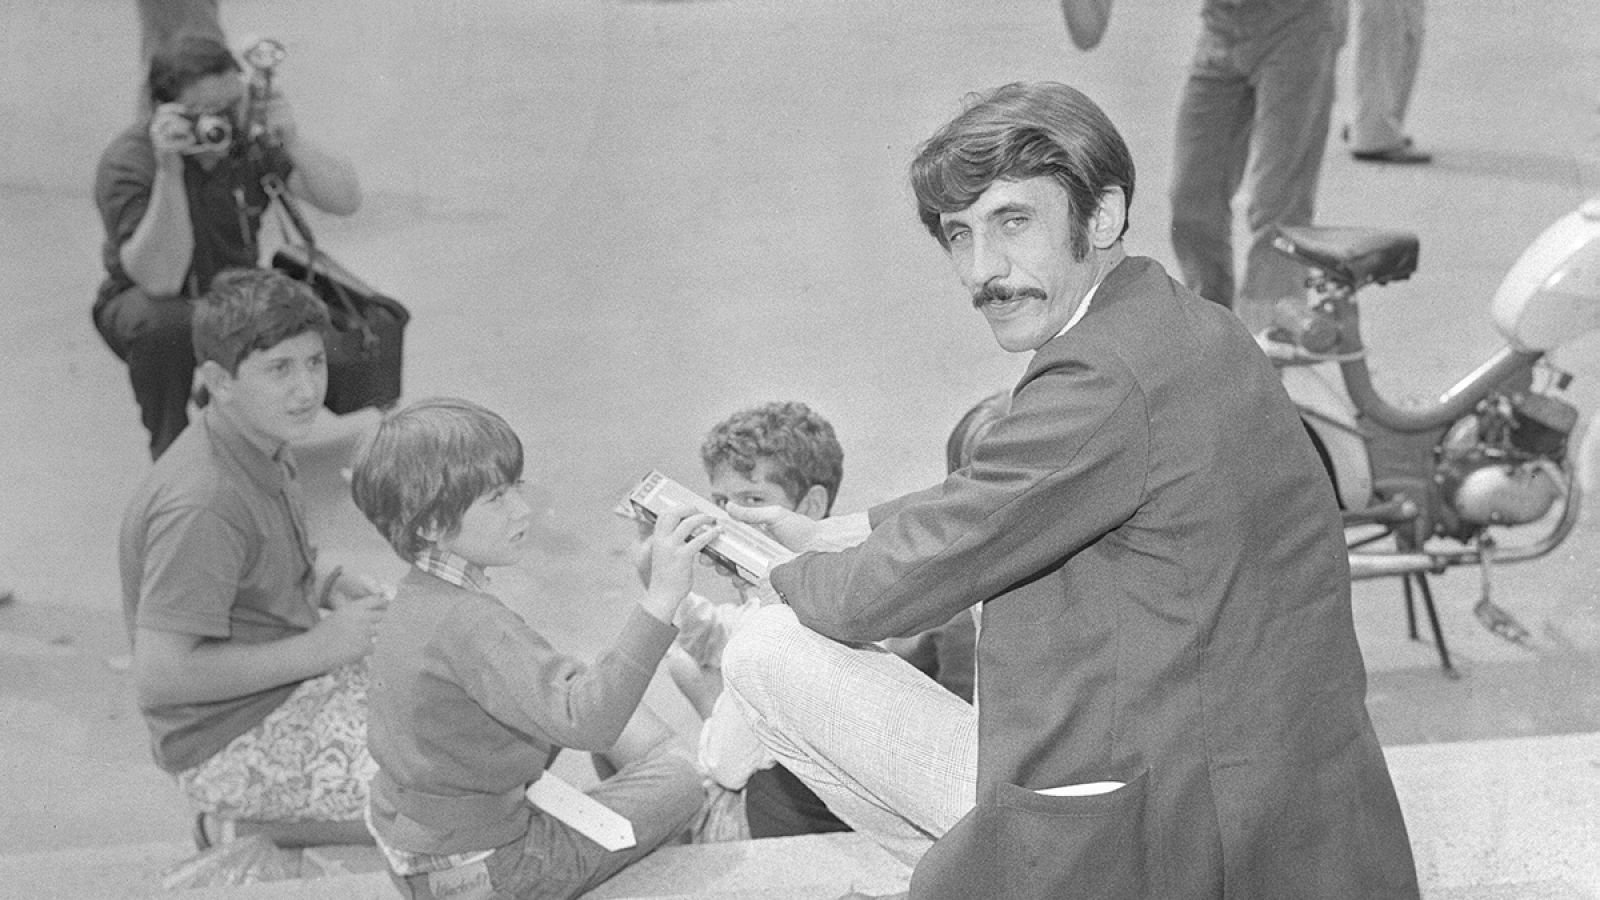 El director de cine Basilio Martín Patino participó en la 30 edición de la Mostra de Venecia de 1969 con la película "Del amor y otras soledades".